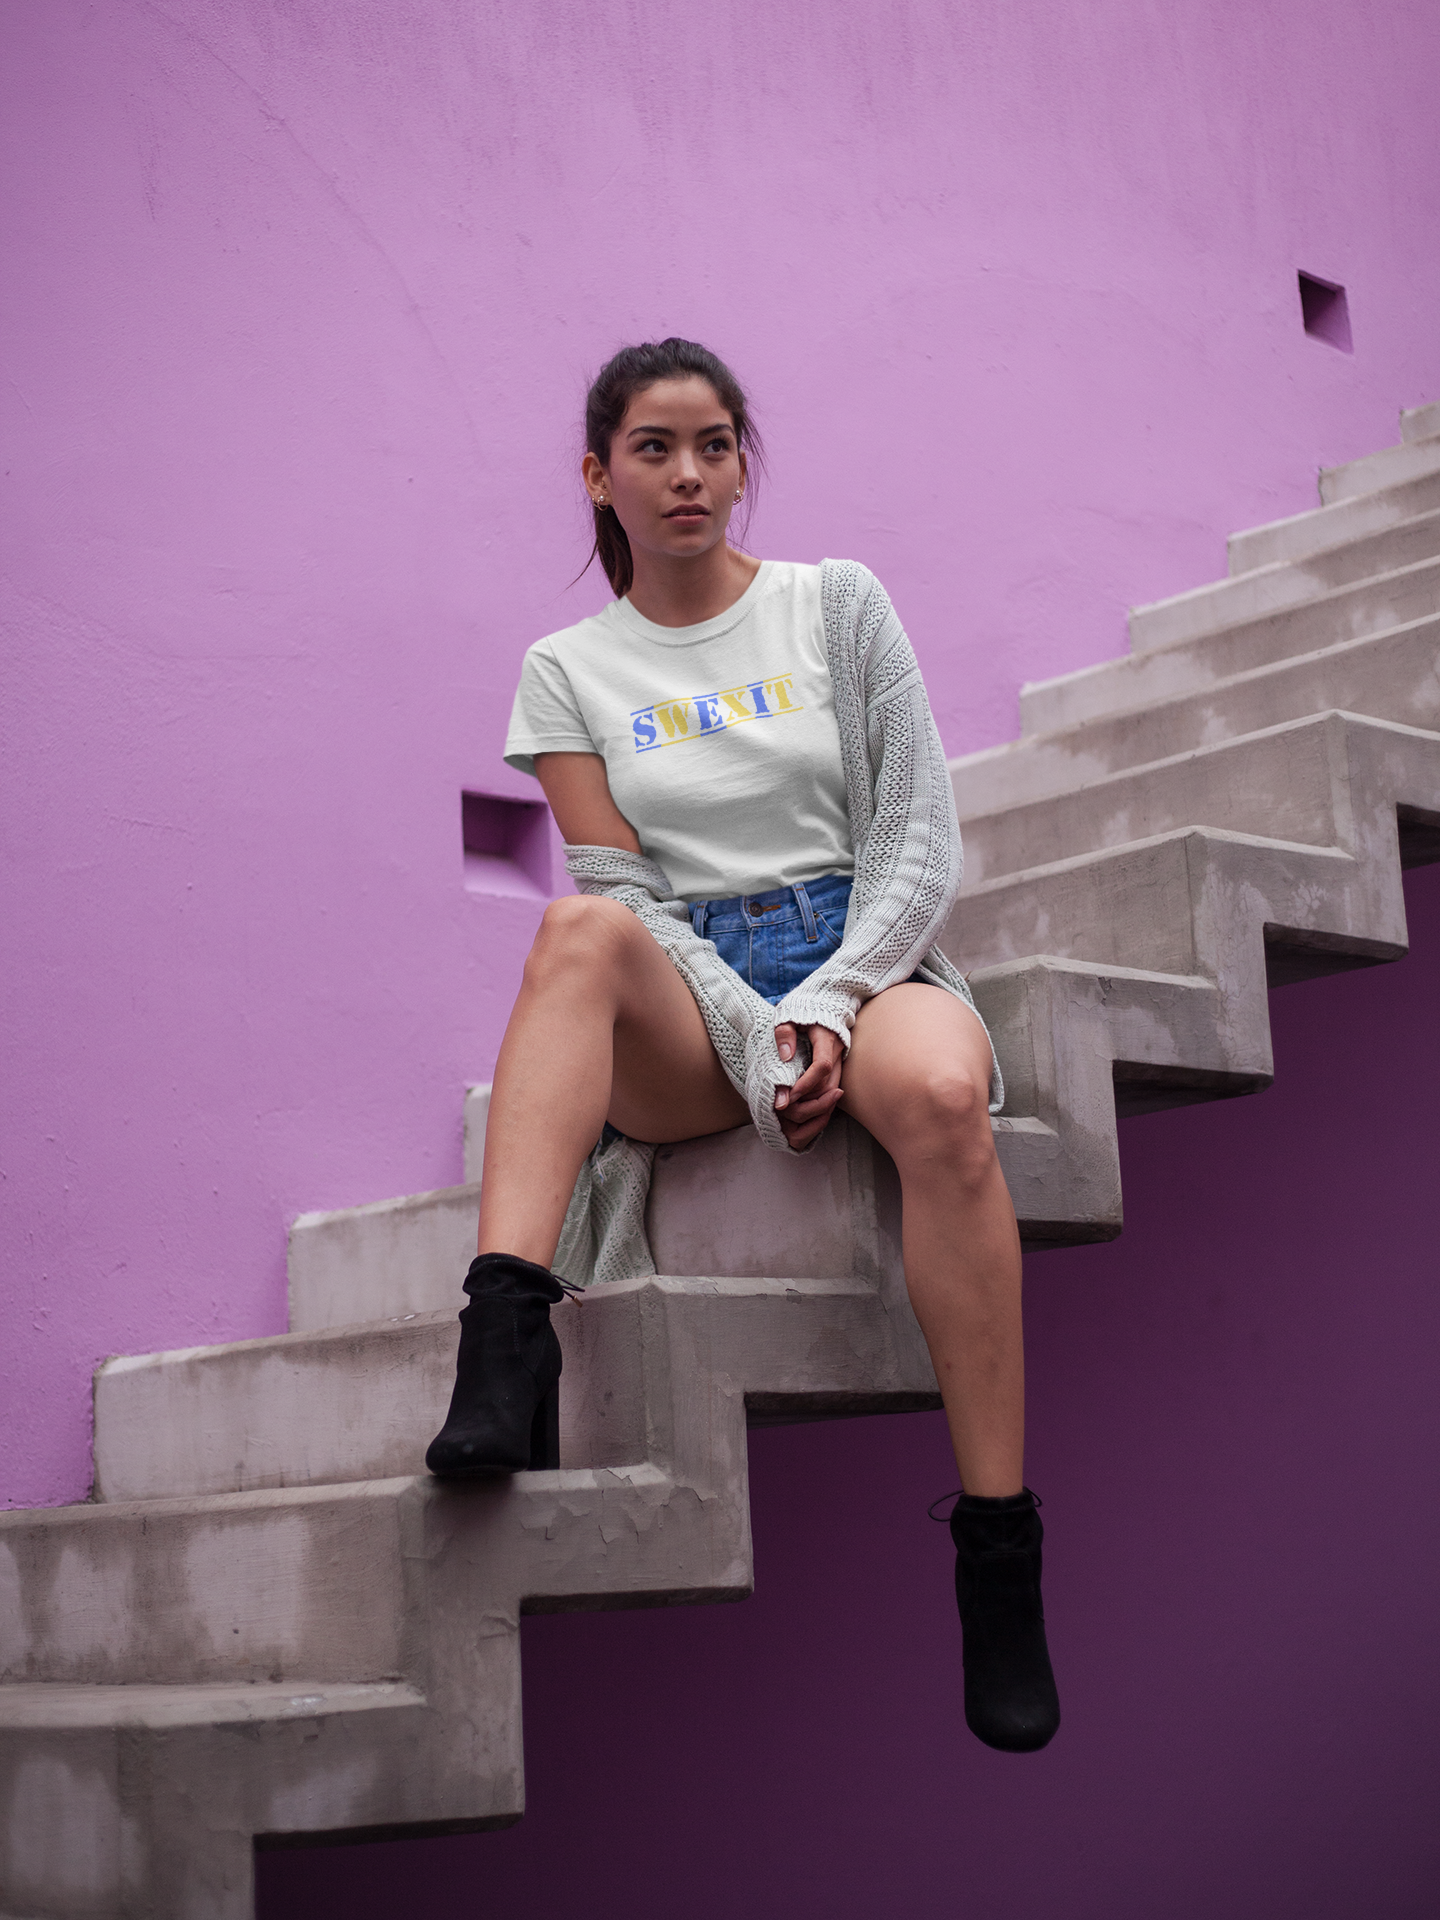 SWEXIT T-Shirt Dam, Flera färger att välja mellan, T-Shirts med unika texter & motiv från Statements Clothing